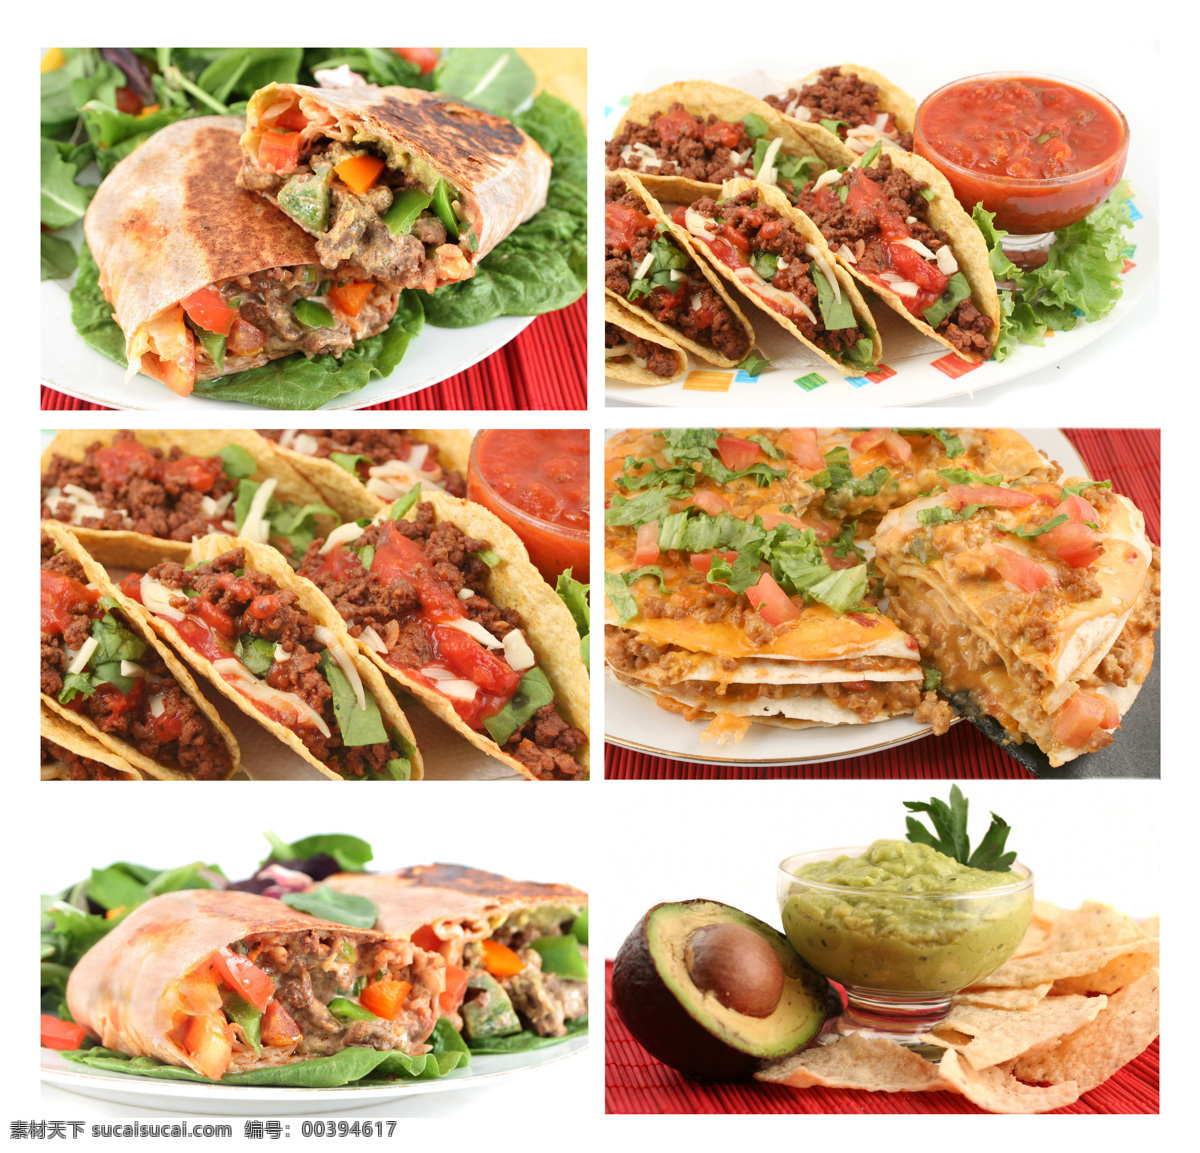 各种 美味 食物 墨西哥食物 美食 餐厅美食 蘸酱 外国食物 外国美食 餐饮美食